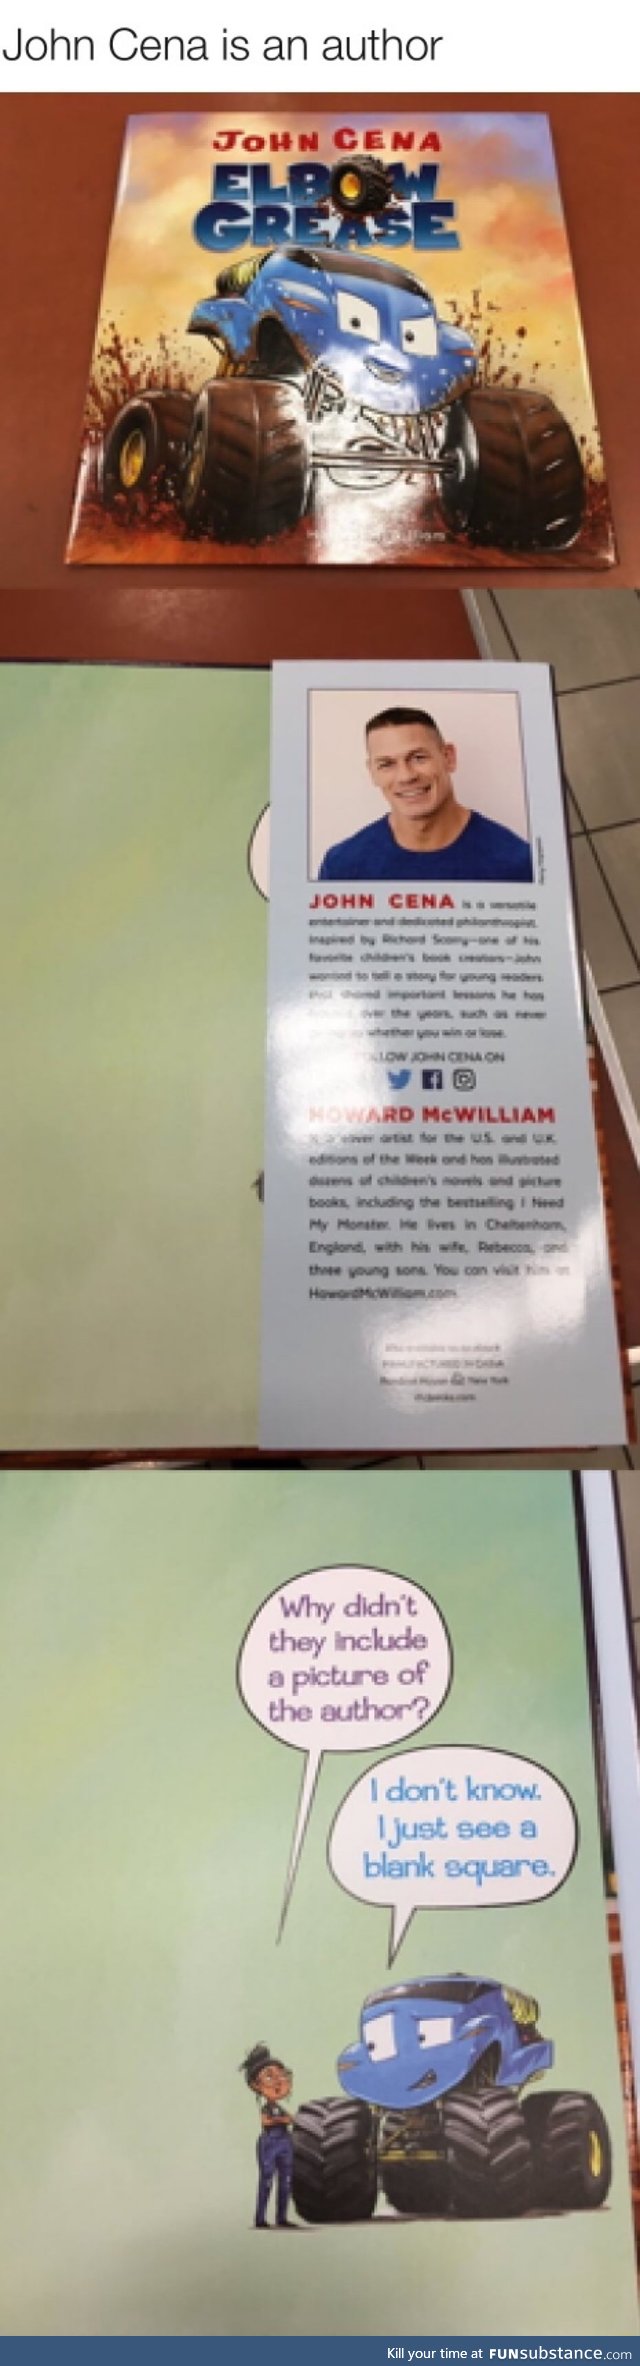 John Cena is an author